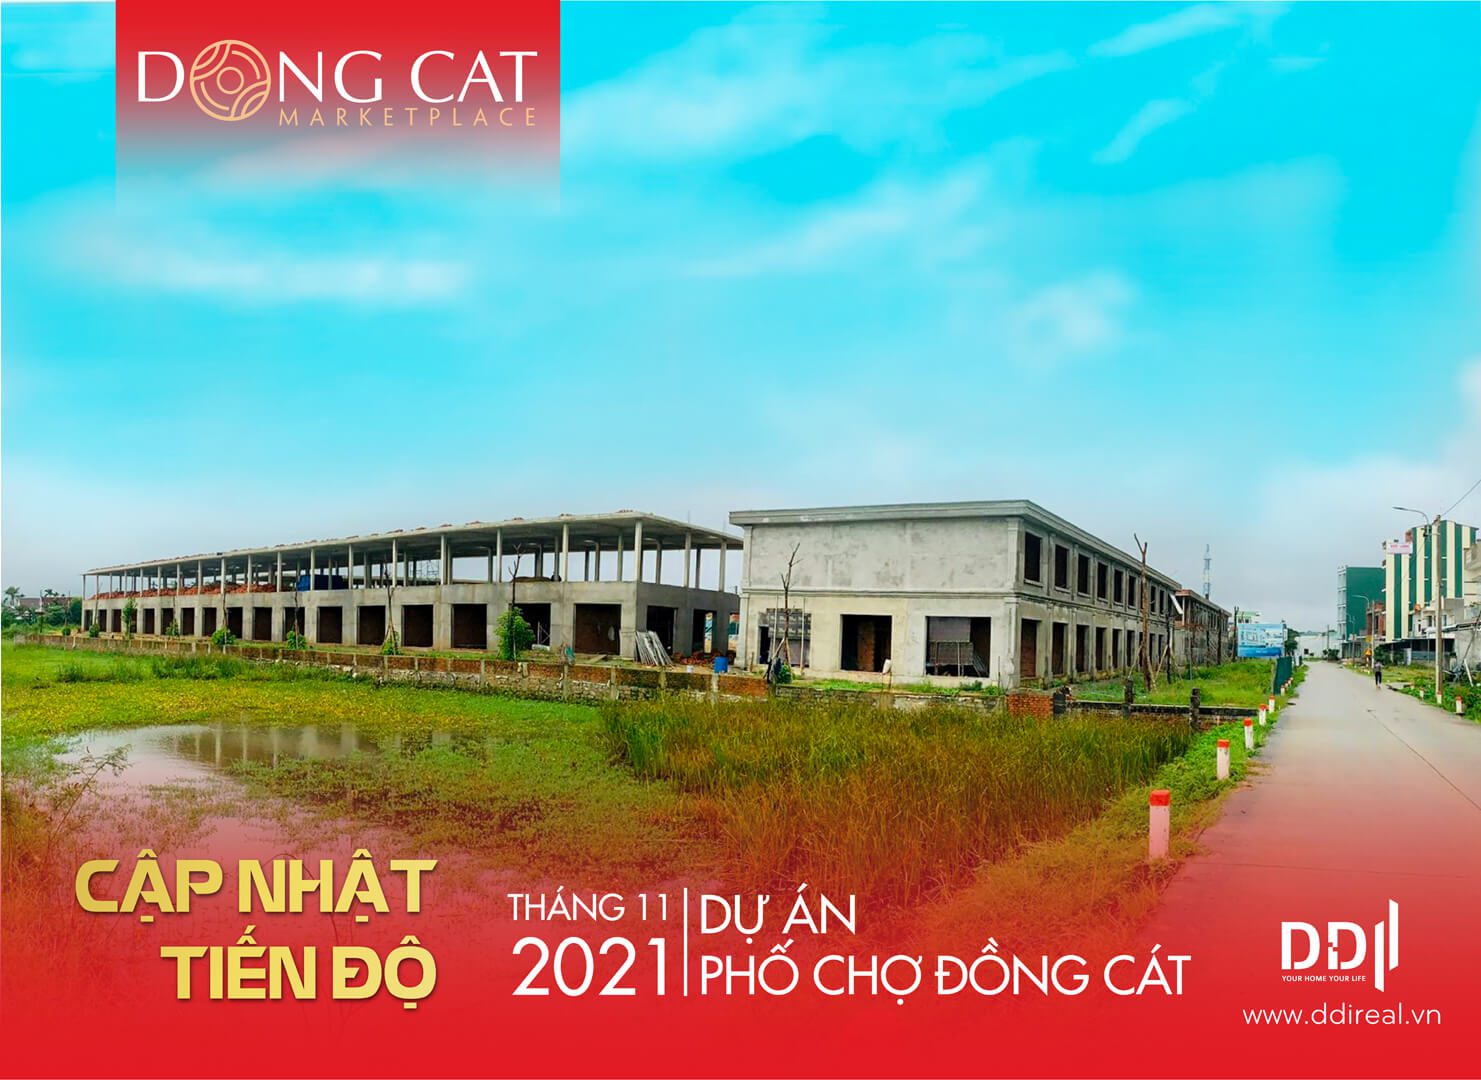 pho-cho-dong-cat-loi-giai-bai-toan-cho-dau-moi-quy-mo-tai-quang-ngai